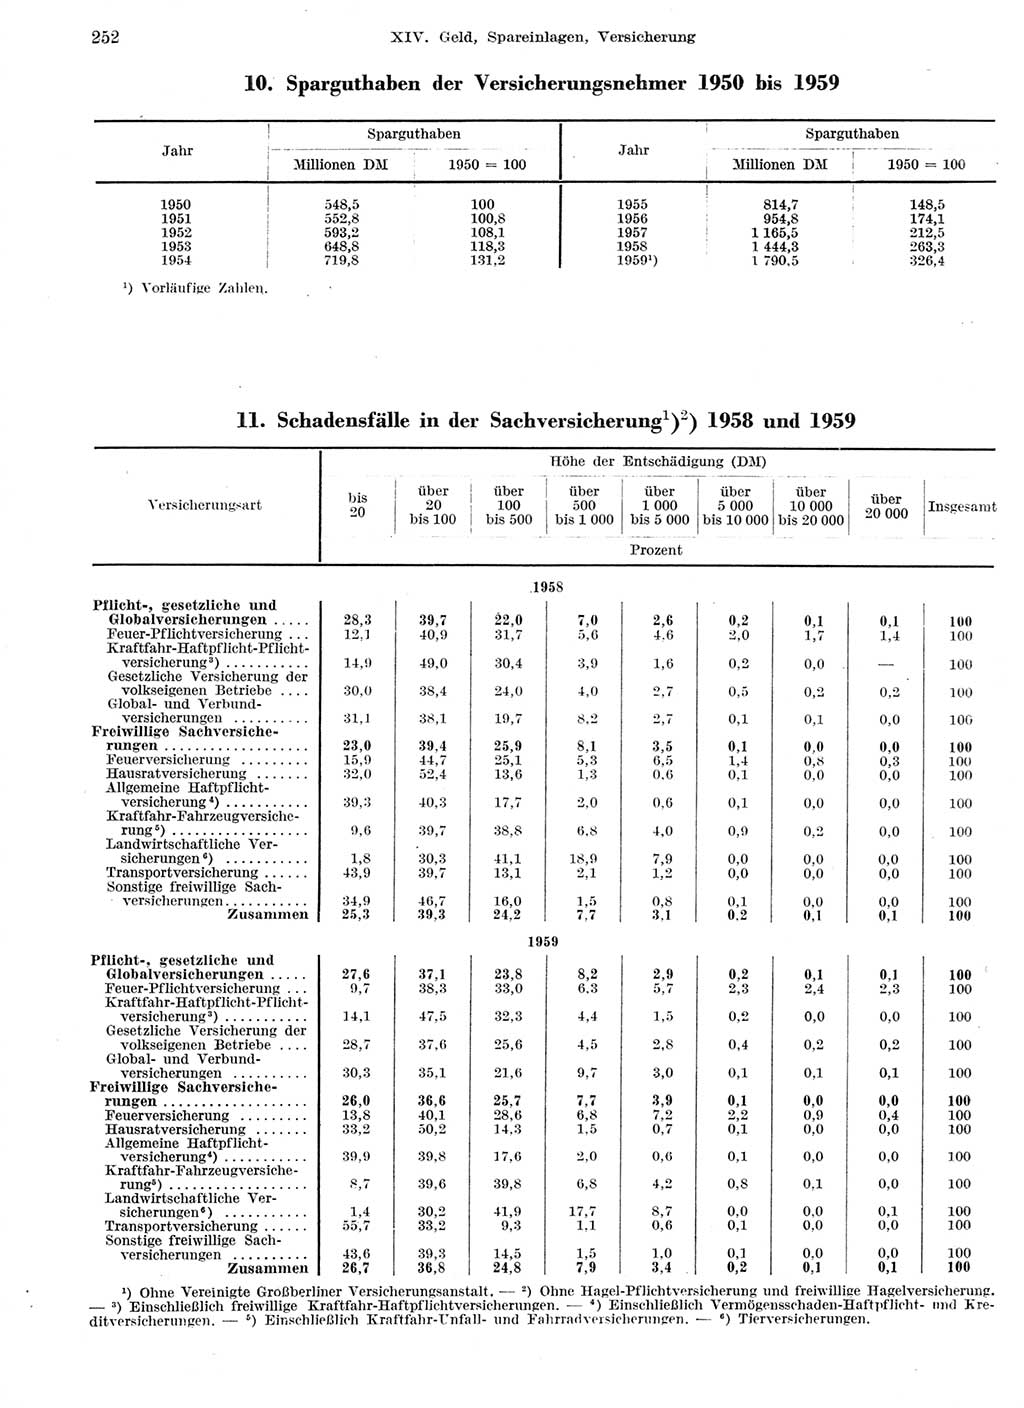 Statistisches Jahrbuch der Deutschen Demokratischen Republik (DDR) 1959, Seite 252 (Stat. Jb. DDR 1959, S. 252)